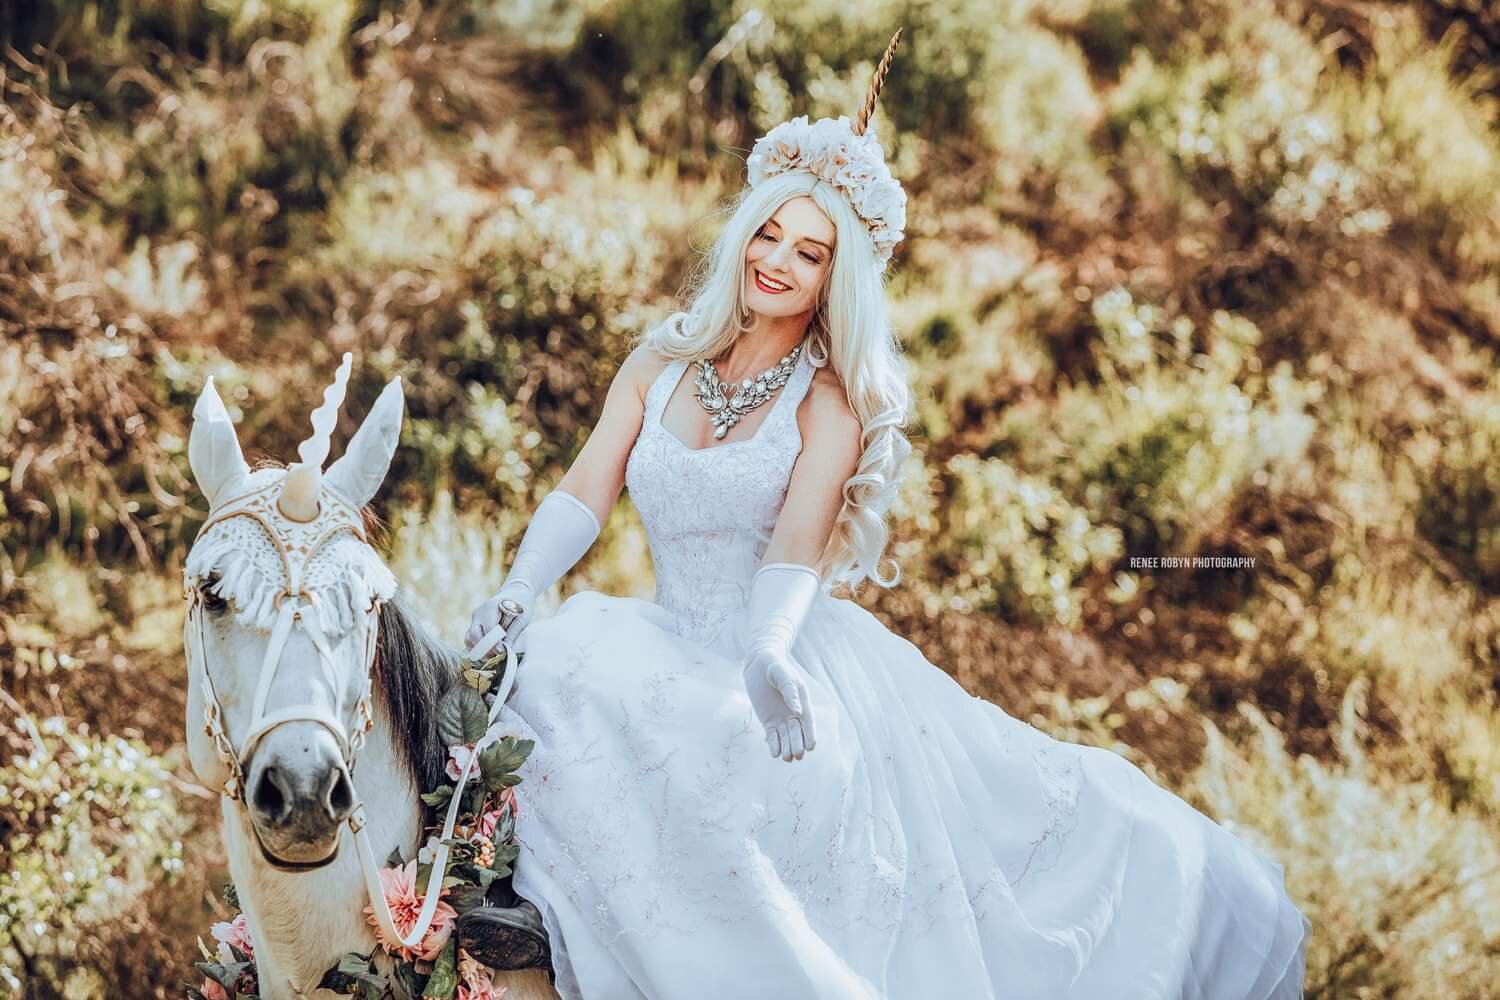 Renee Robyn - Virginia Hankins riding White Horse Unicorn Sidesaddle at Wedding.jpeg